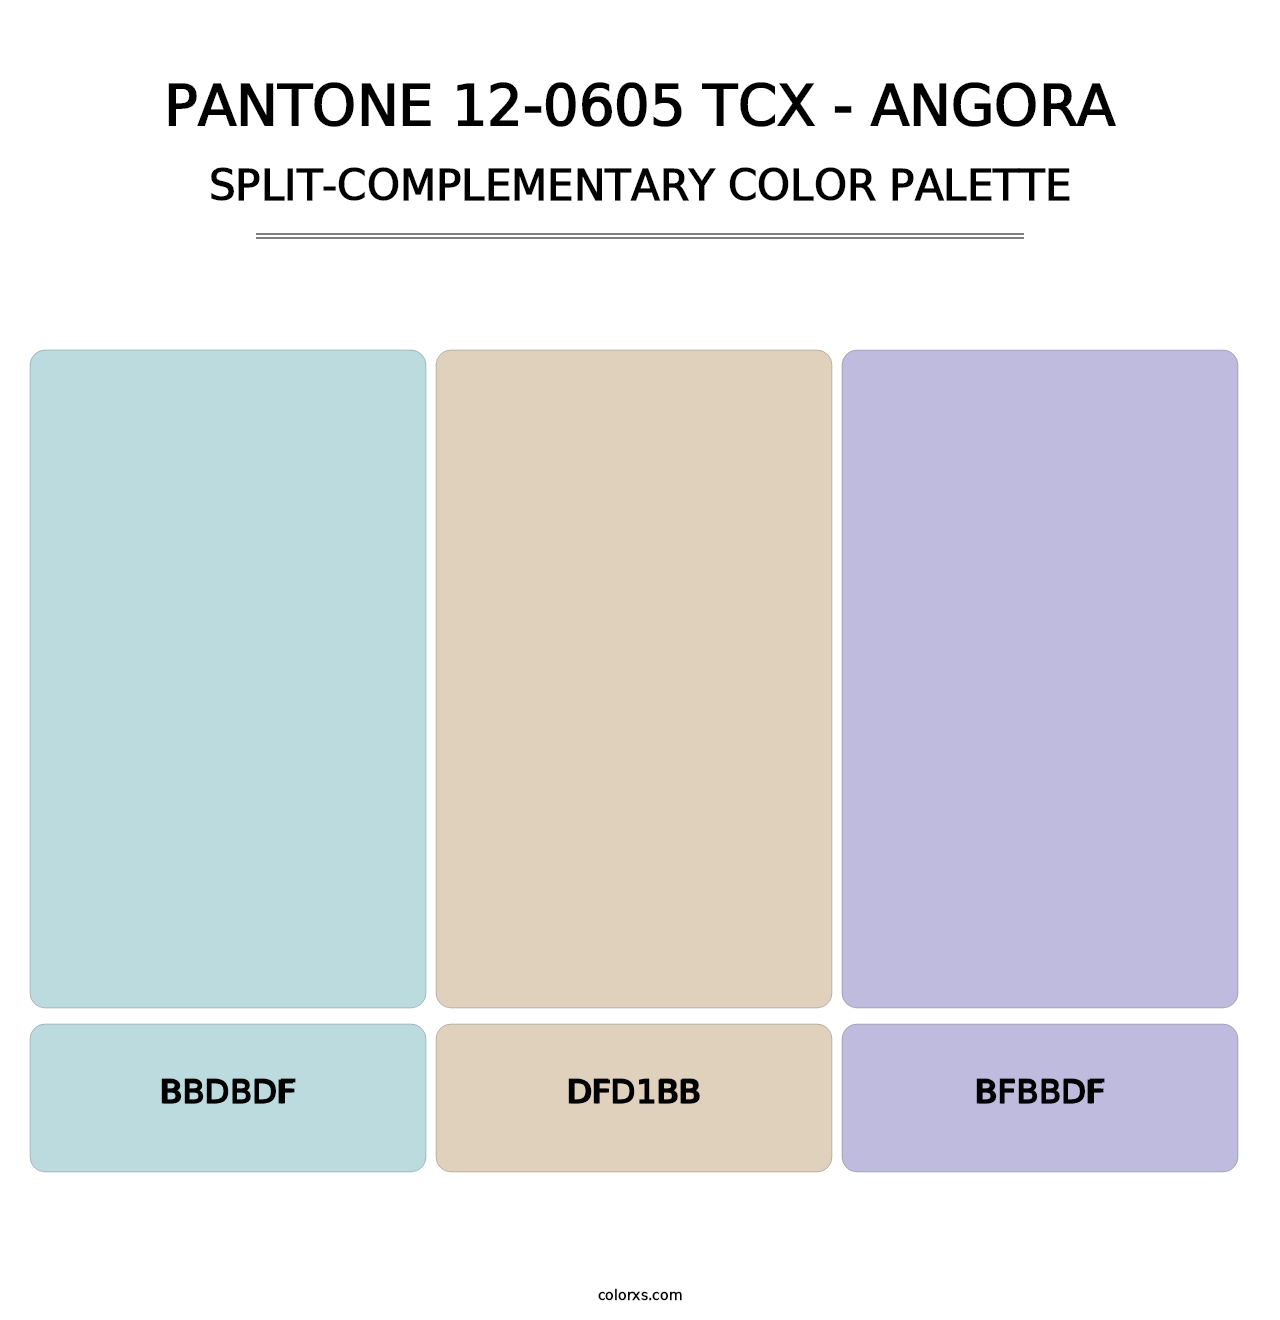 PANTONE 12-0605 TCX - Angora - Split-Complementary Color Palette